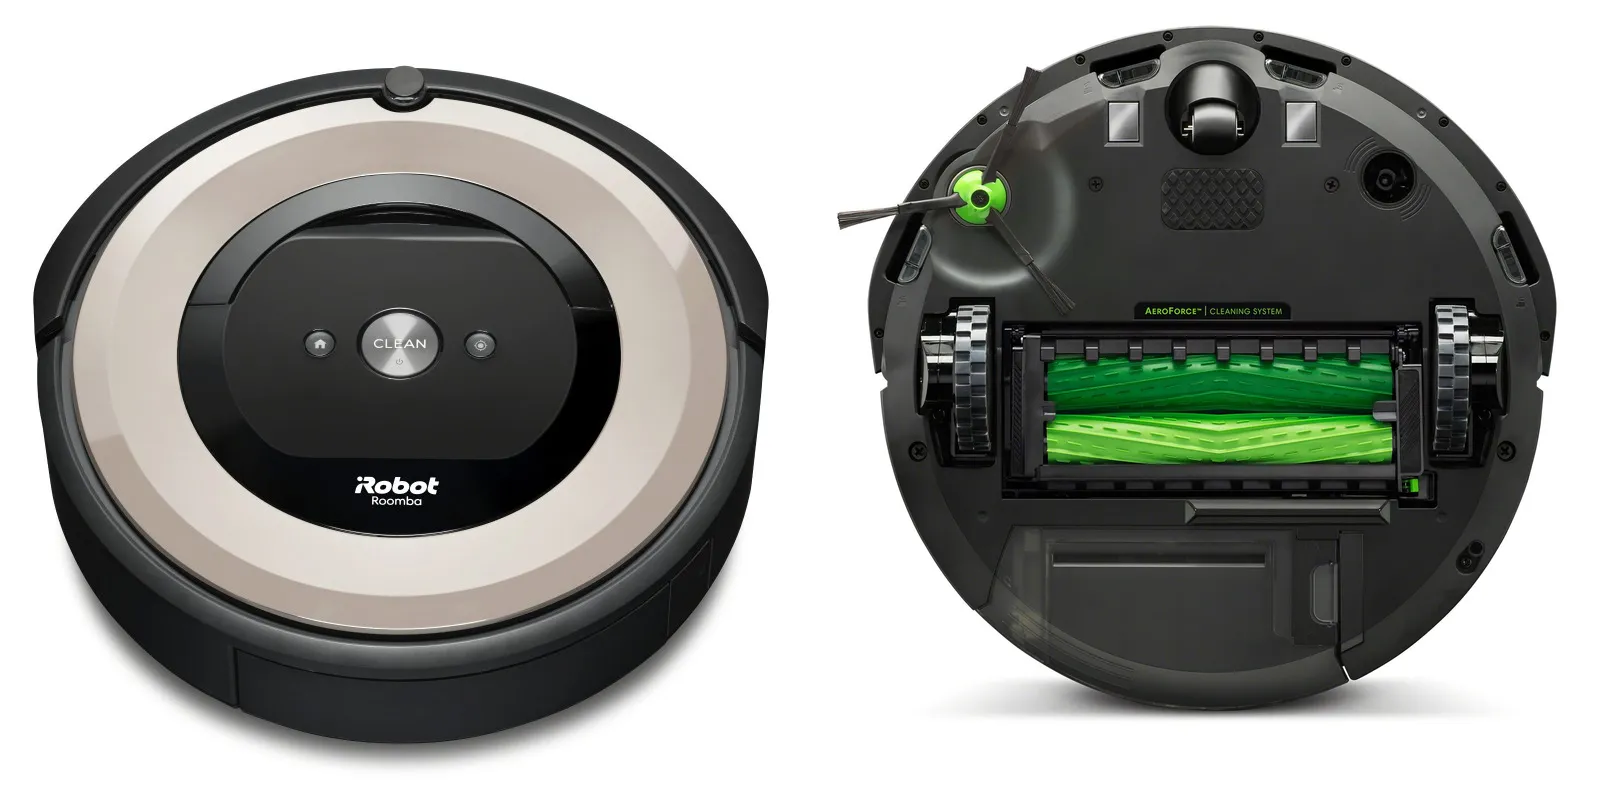 Roomba I1